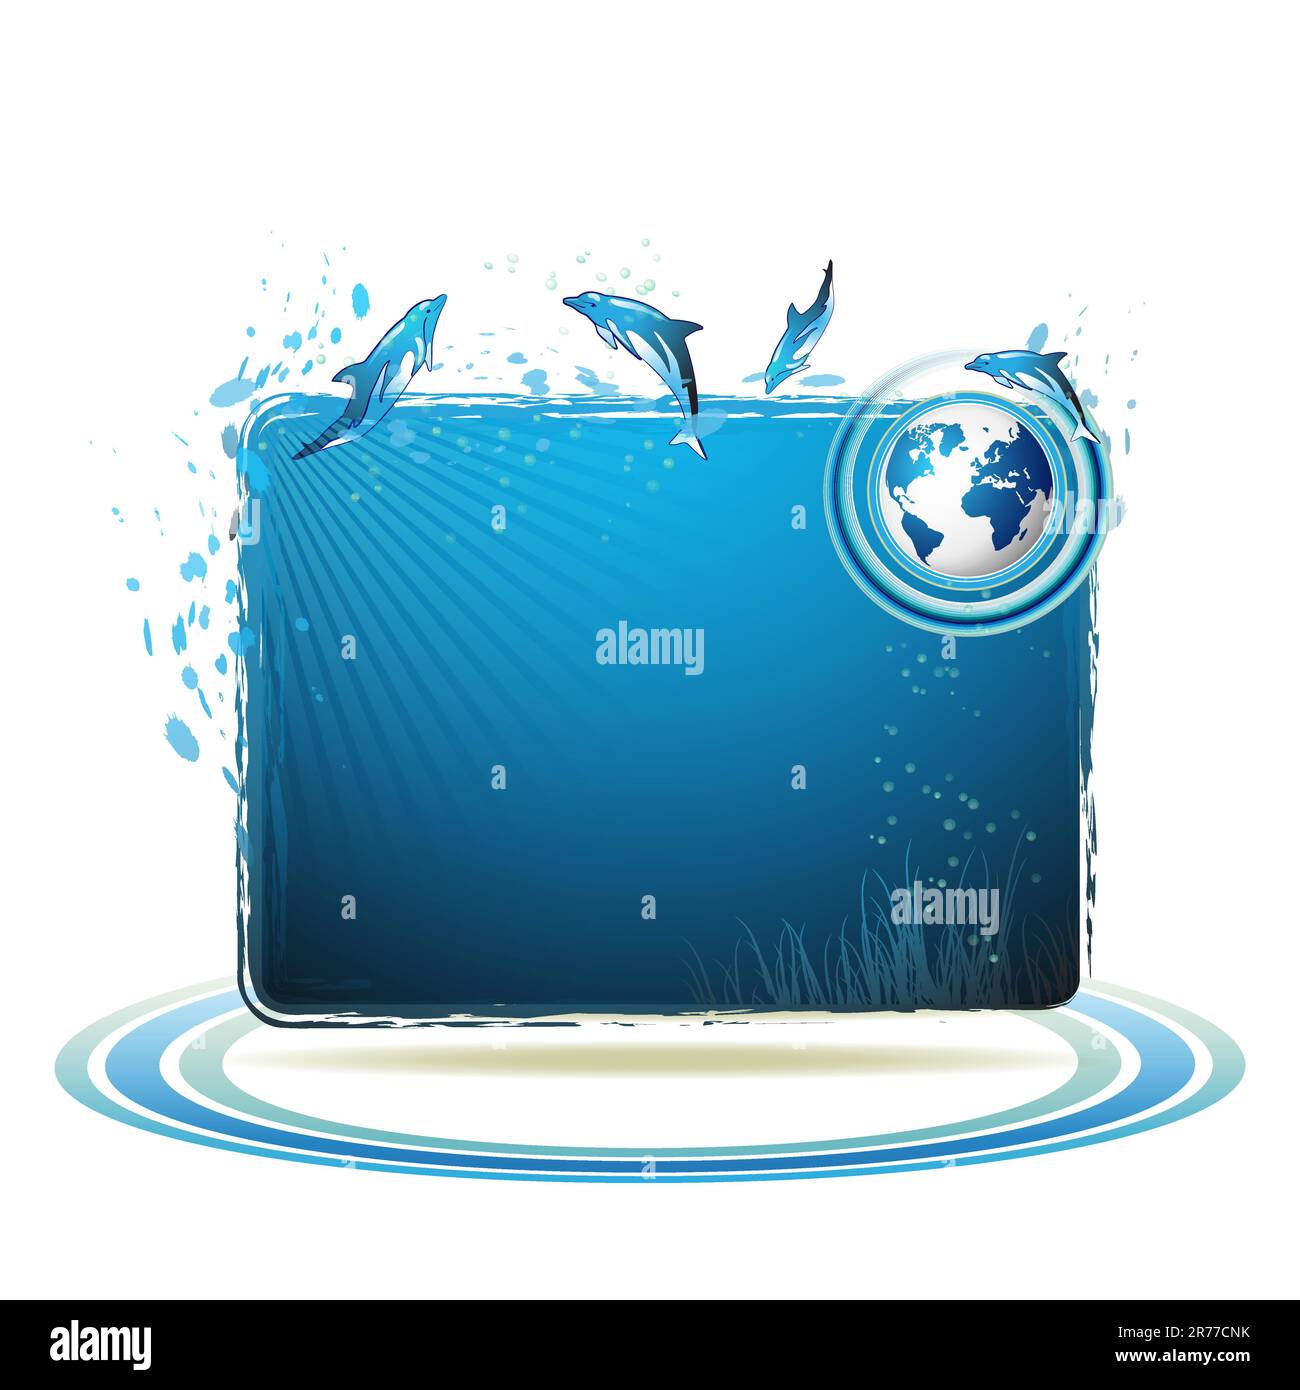 Sfondo blu della Terra con i delfini Illustrazione Vettoriale